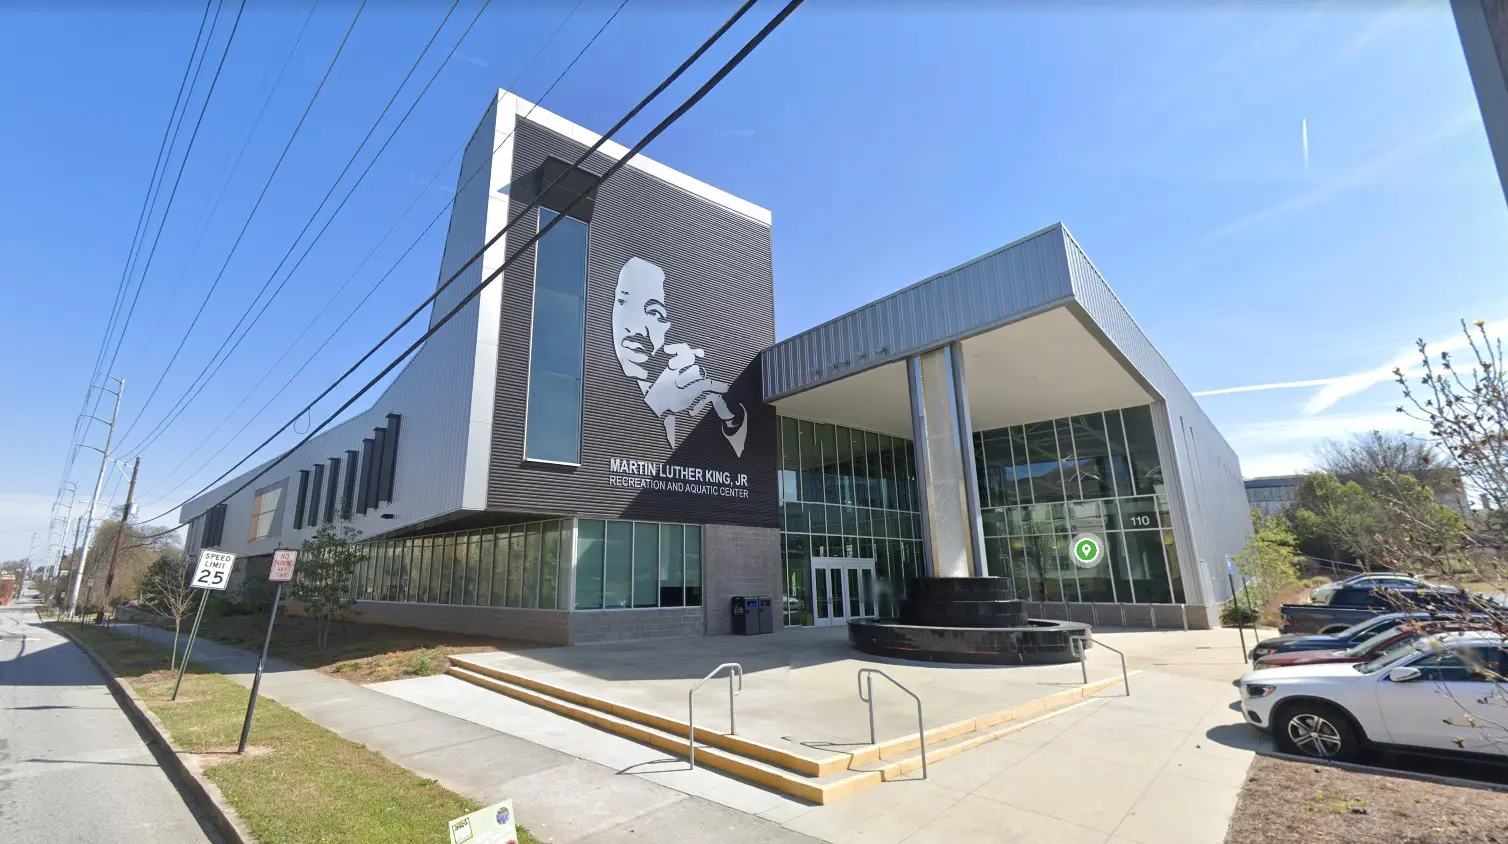 Martin Luther King Jr Recreation Center facade